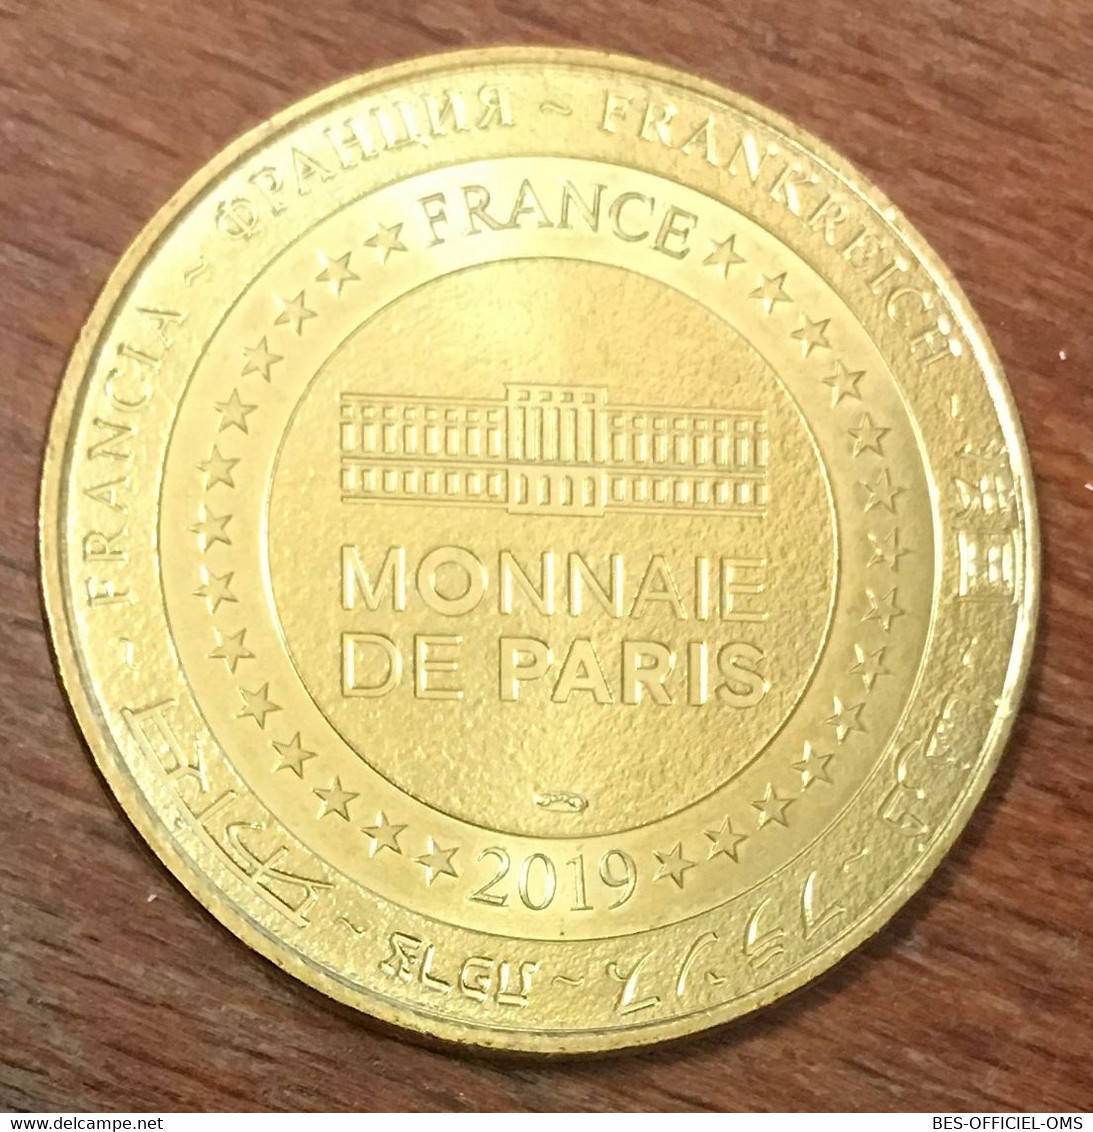 14 BAYEUX TAPISSERIE MDP 2019 MÉDAILLE SOUVENIR MONNAIE DE PARIS JETON TOURISTIQUE MEDALS TOKENS COINS - 2019